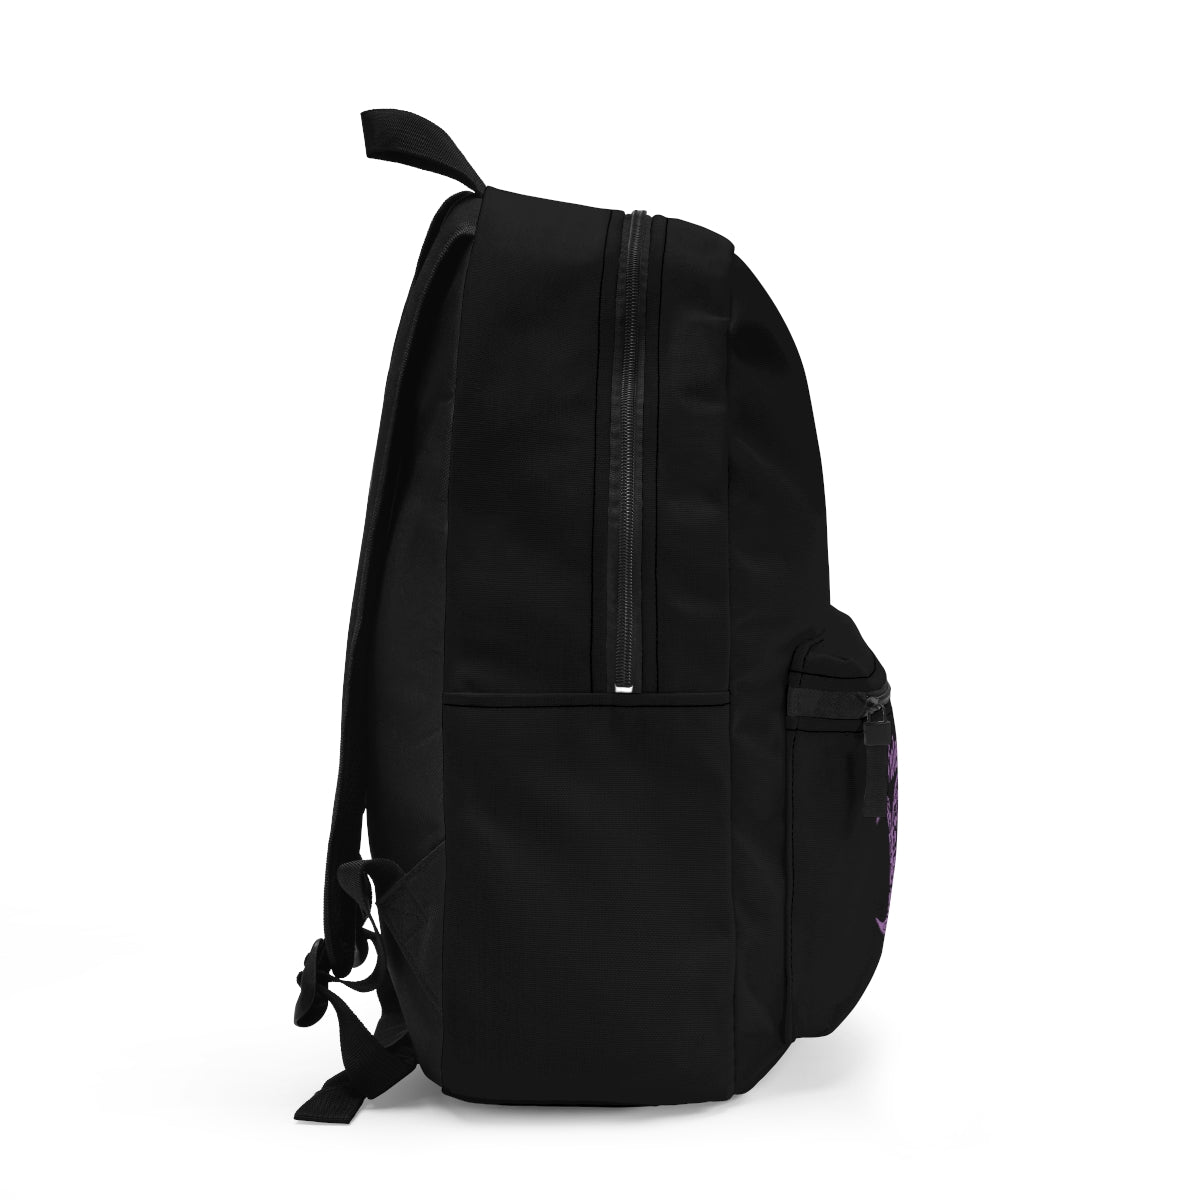 Violetann Tarot Logo - Backpack